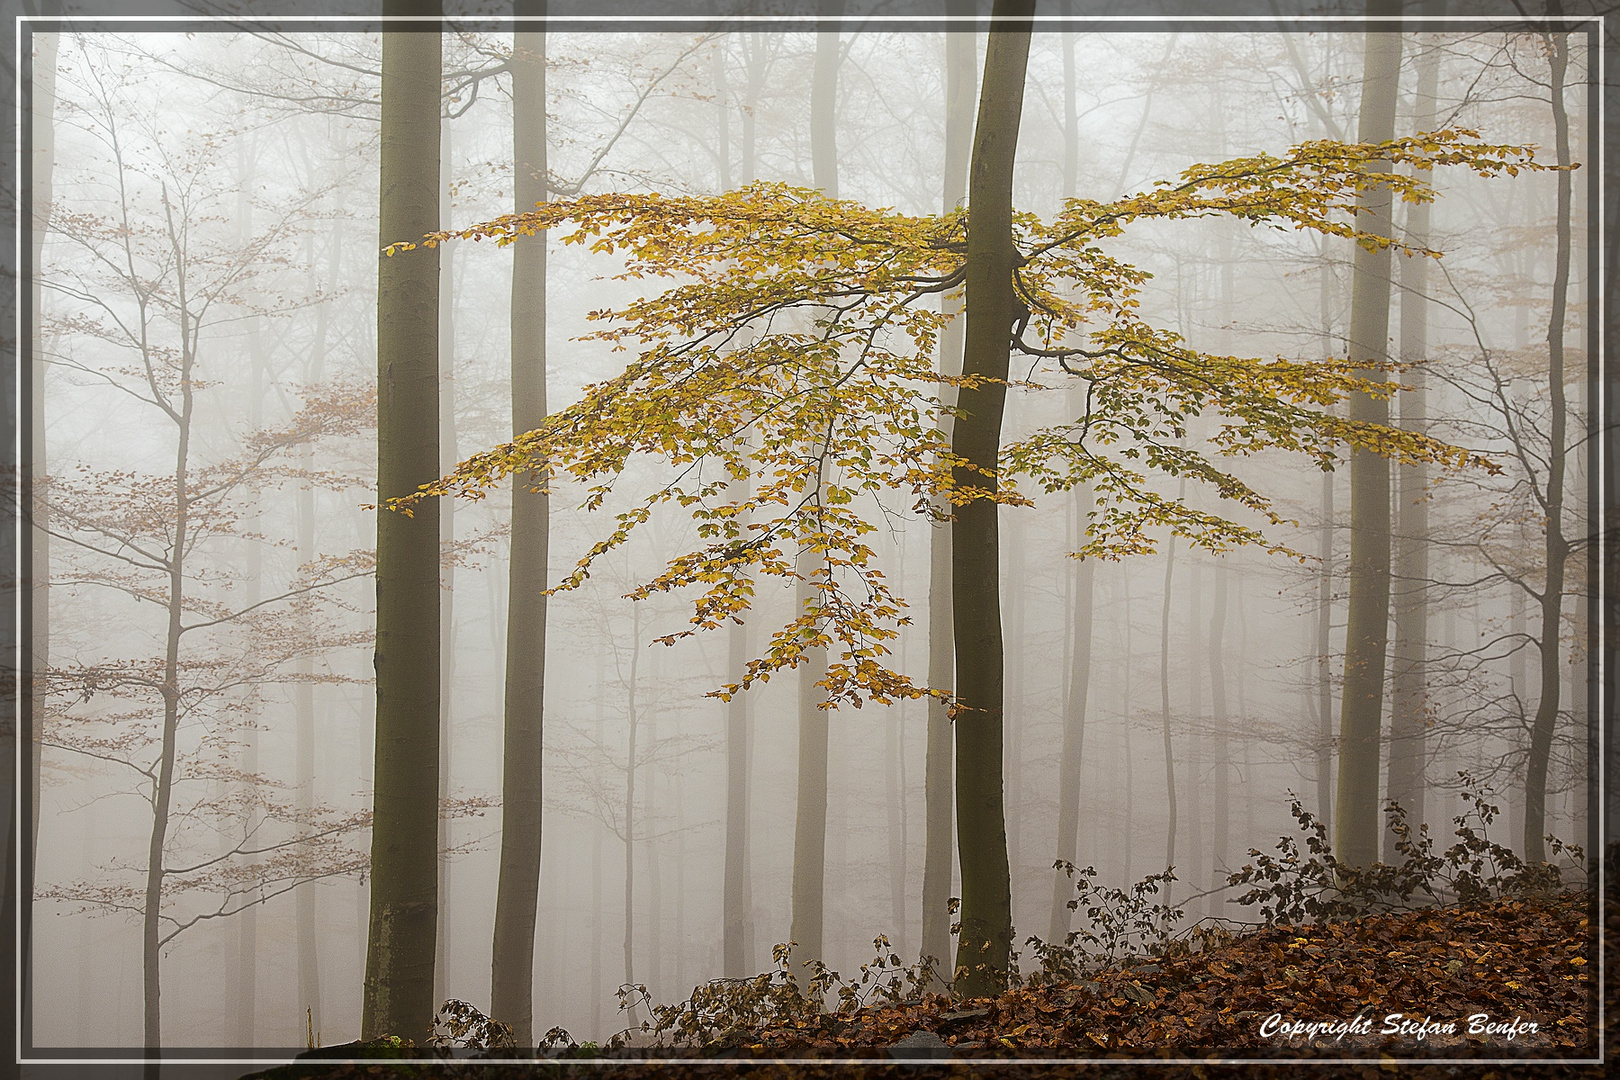 Nebel in Wittgensteiner Wäldern